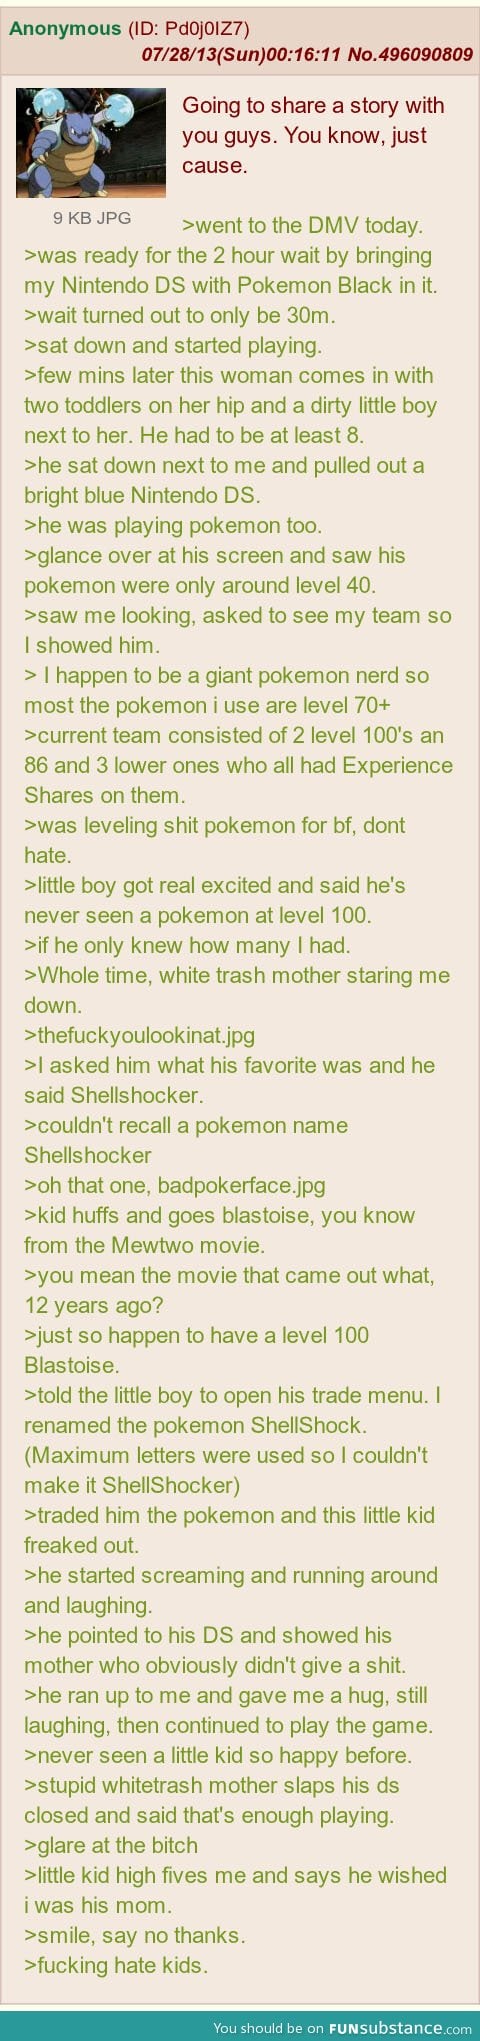 A pokemon tale